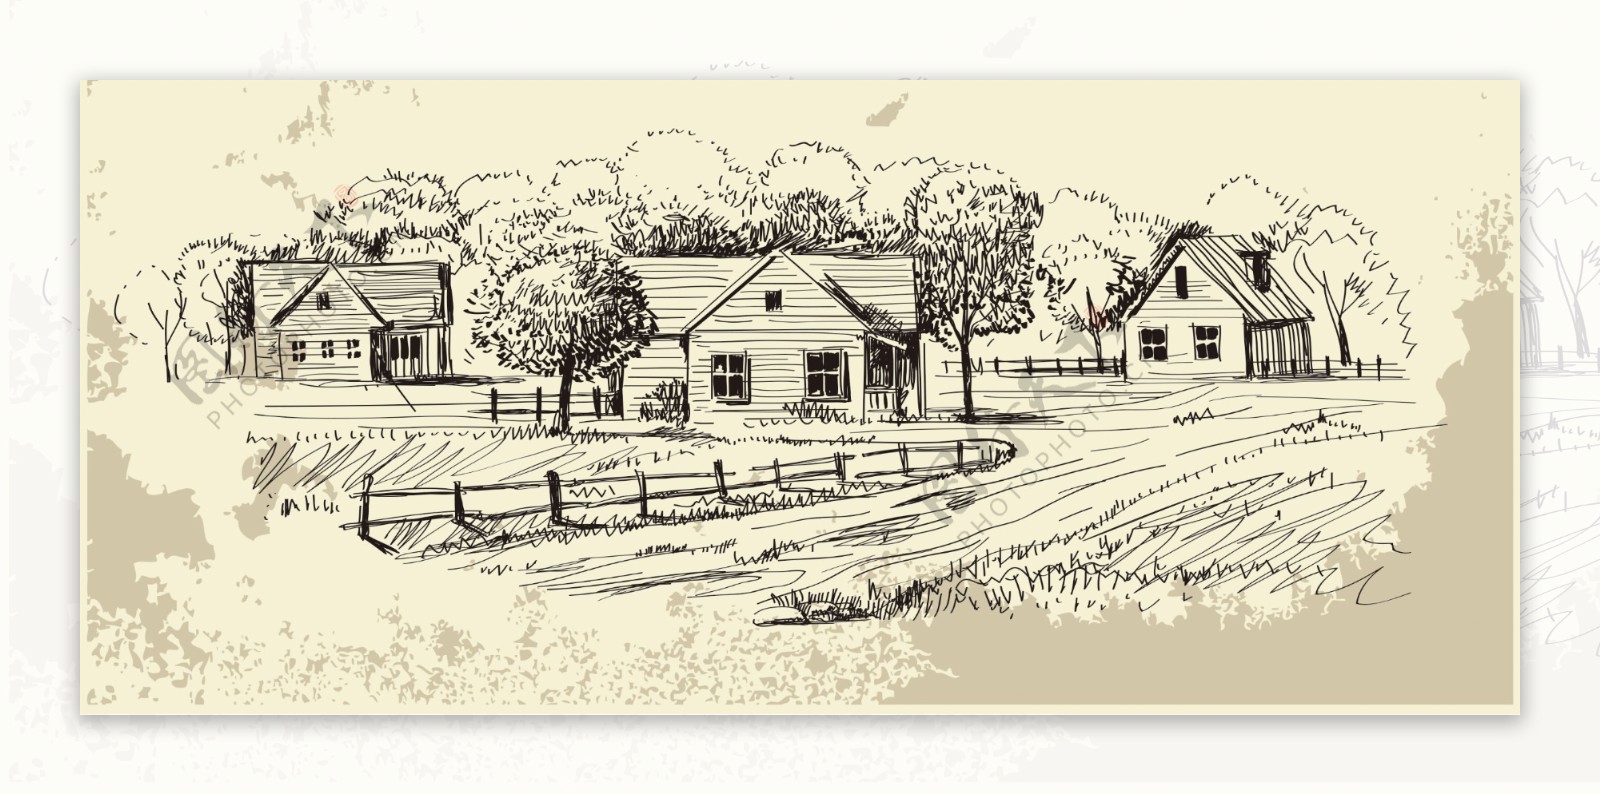 乡间的房屋素描画